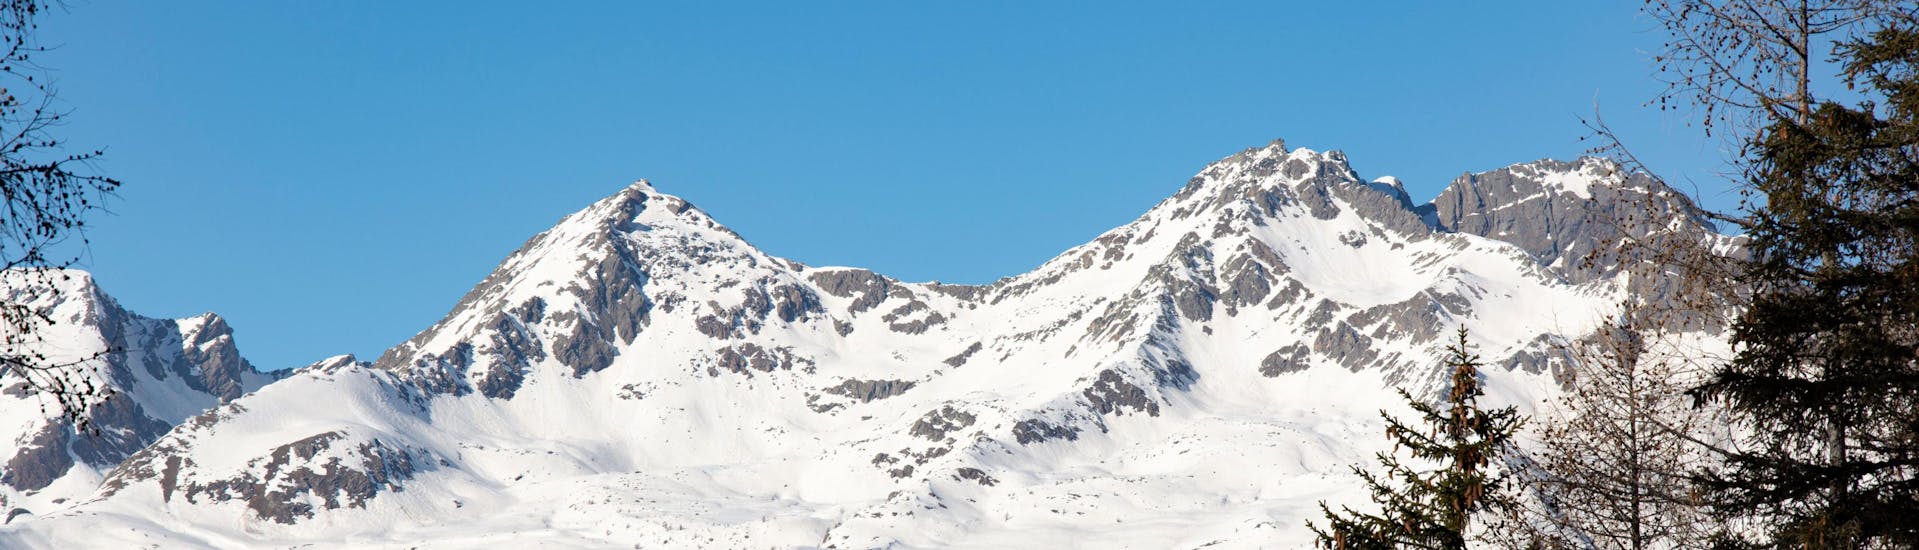 Winter landscape near Daolasa - Commezzadura where you can book ski lessons.